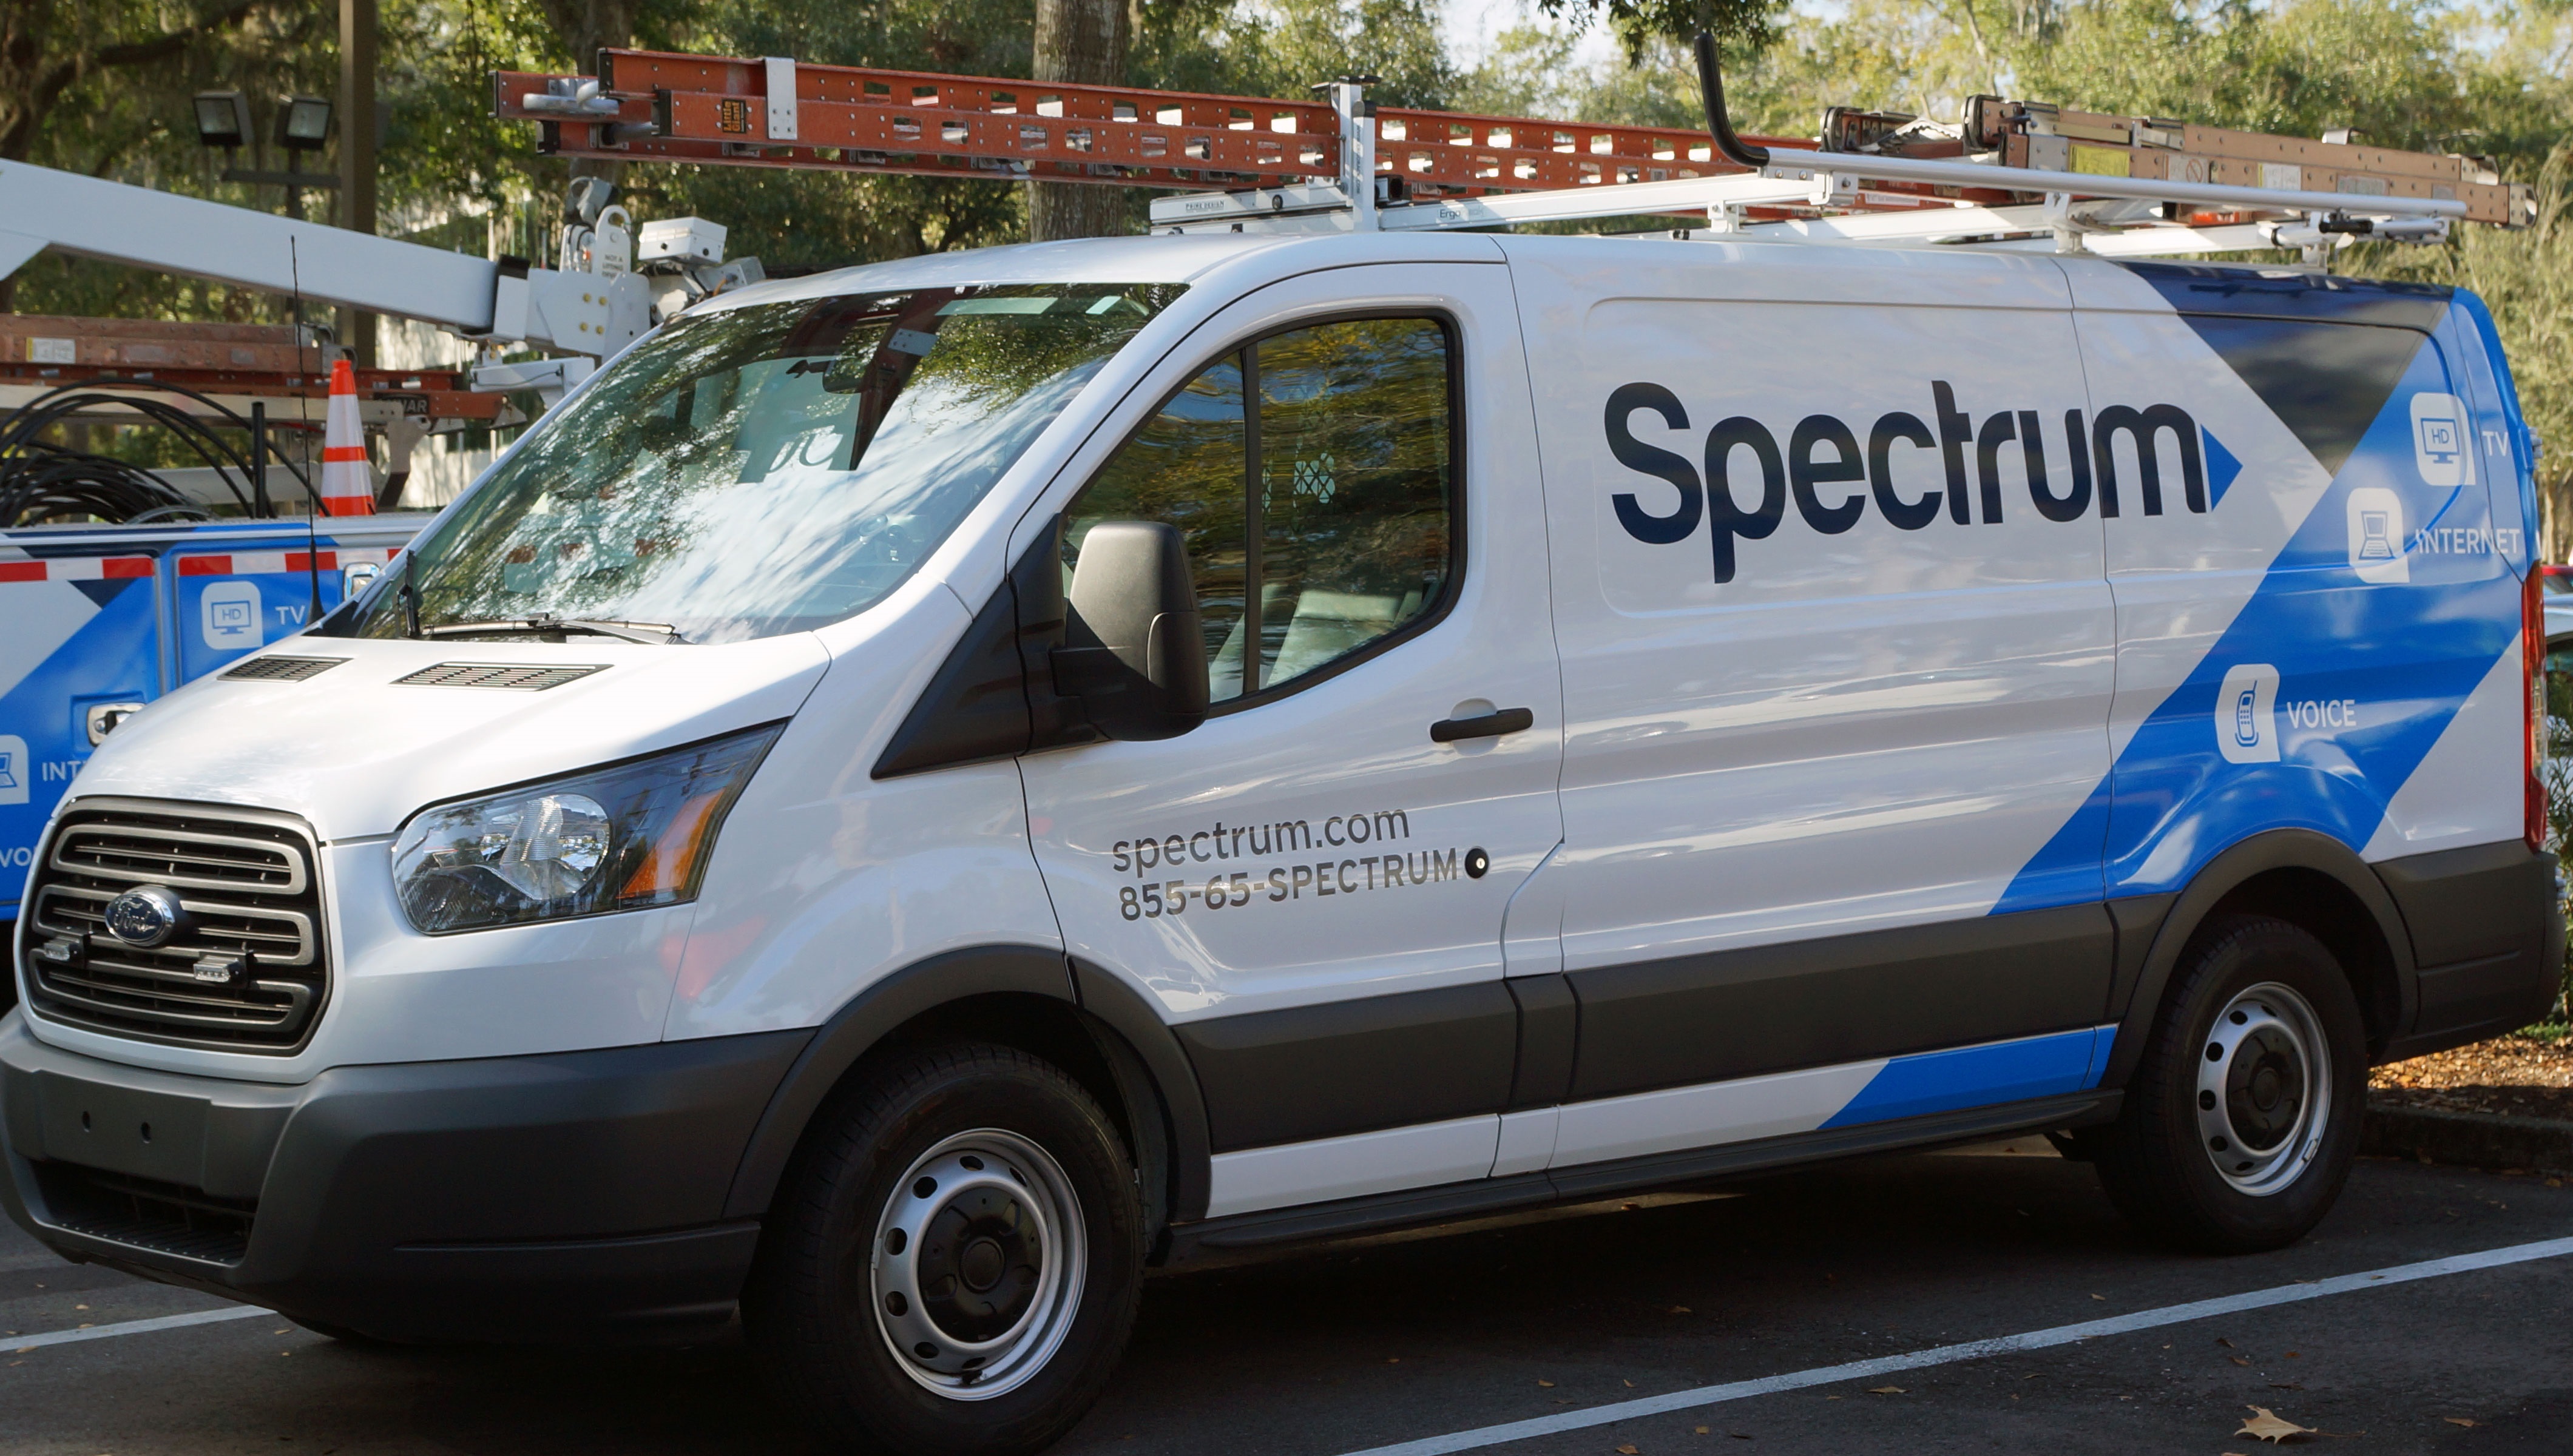 Charter Spectrum broadband